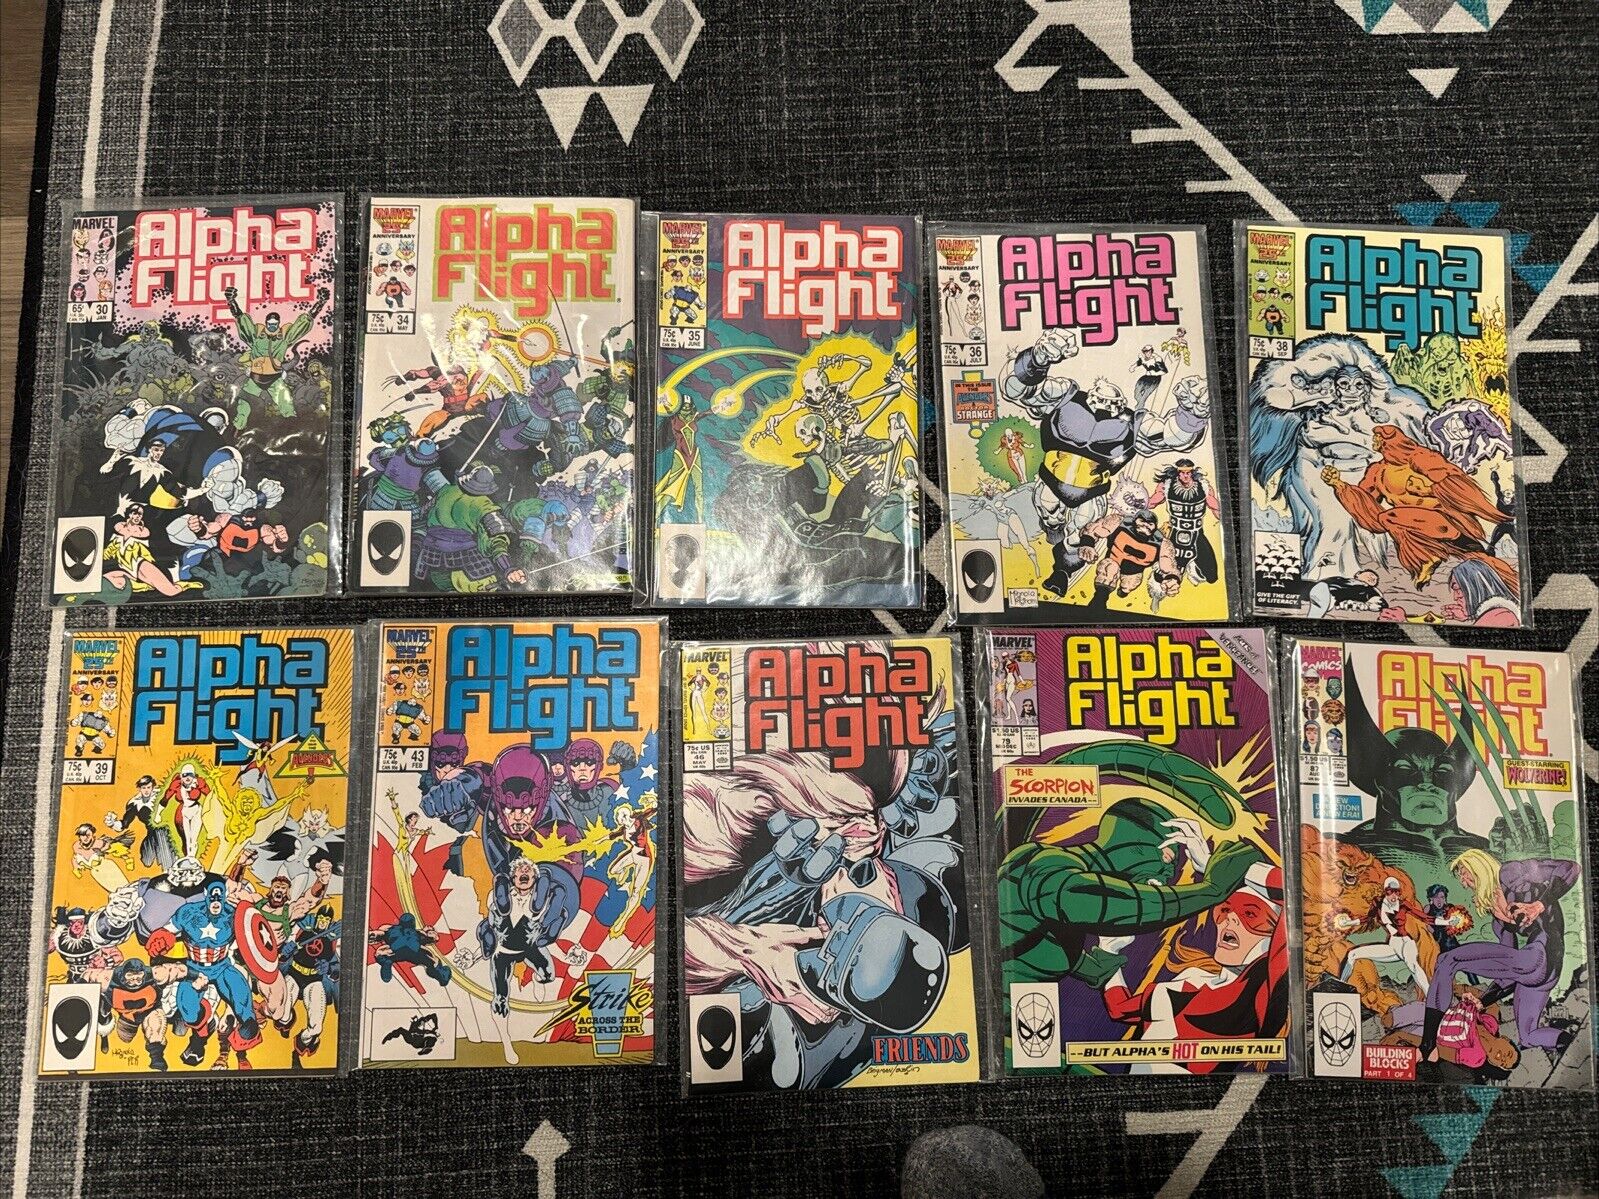 Alpha Flight #33-39, 43, 46, 79, 87 1987 Marvel Comics Lot of 10 Comics